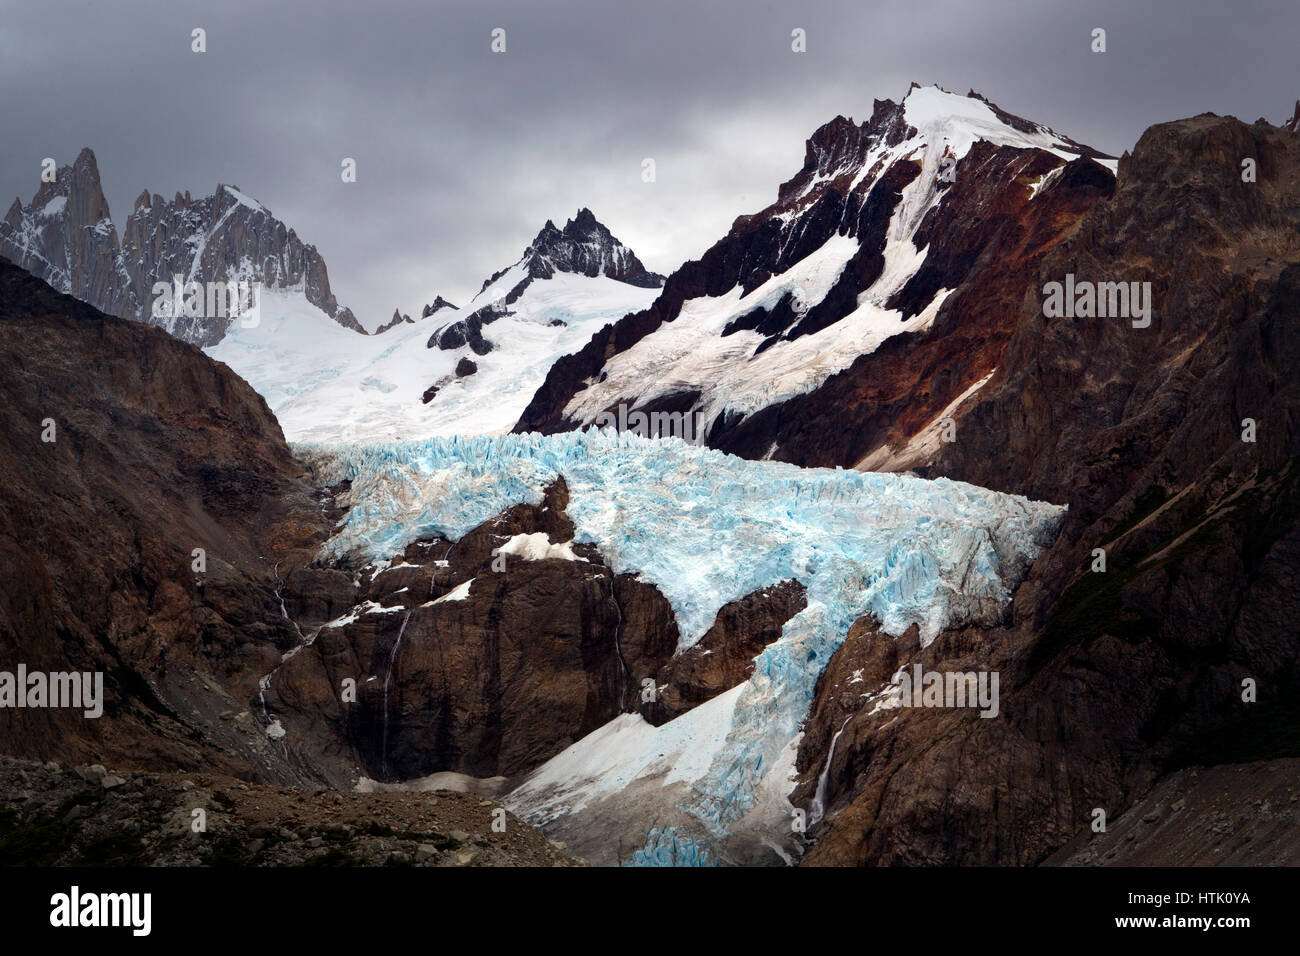 Glaciar PIEDRAS BLANCAS accanto al Monte Fitz Roy, parco nazionale Los Glaciares, Patagonia, Argentina Foto Stock